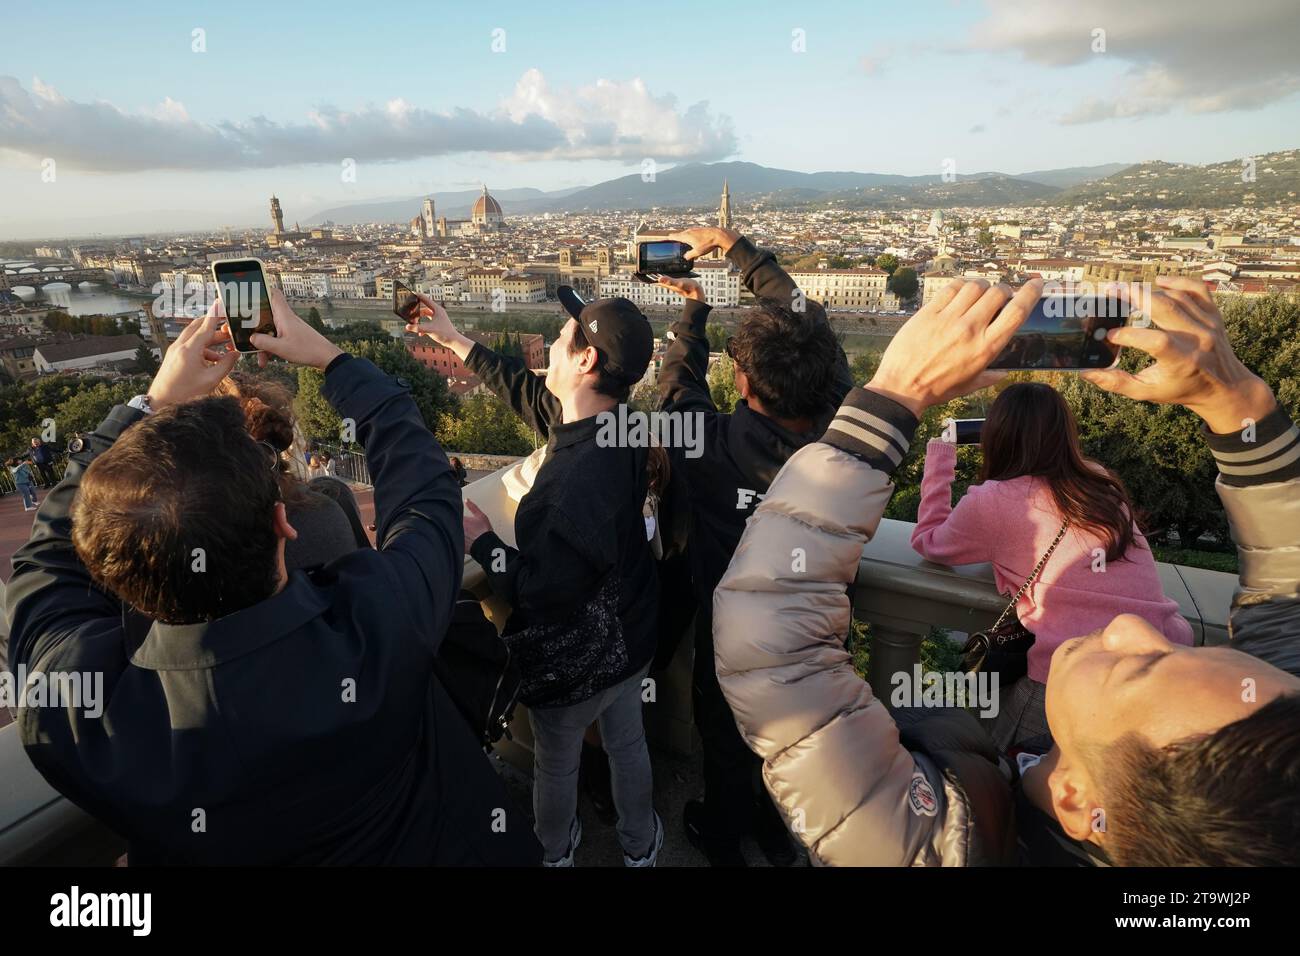 Menschen, Touristen und Besucher, die sich an der Piazzale Michelangelo versammelt haben und ein Foto vom Panorama der Stadt Florenz bei Sonnenuntergang machen Stockfoto